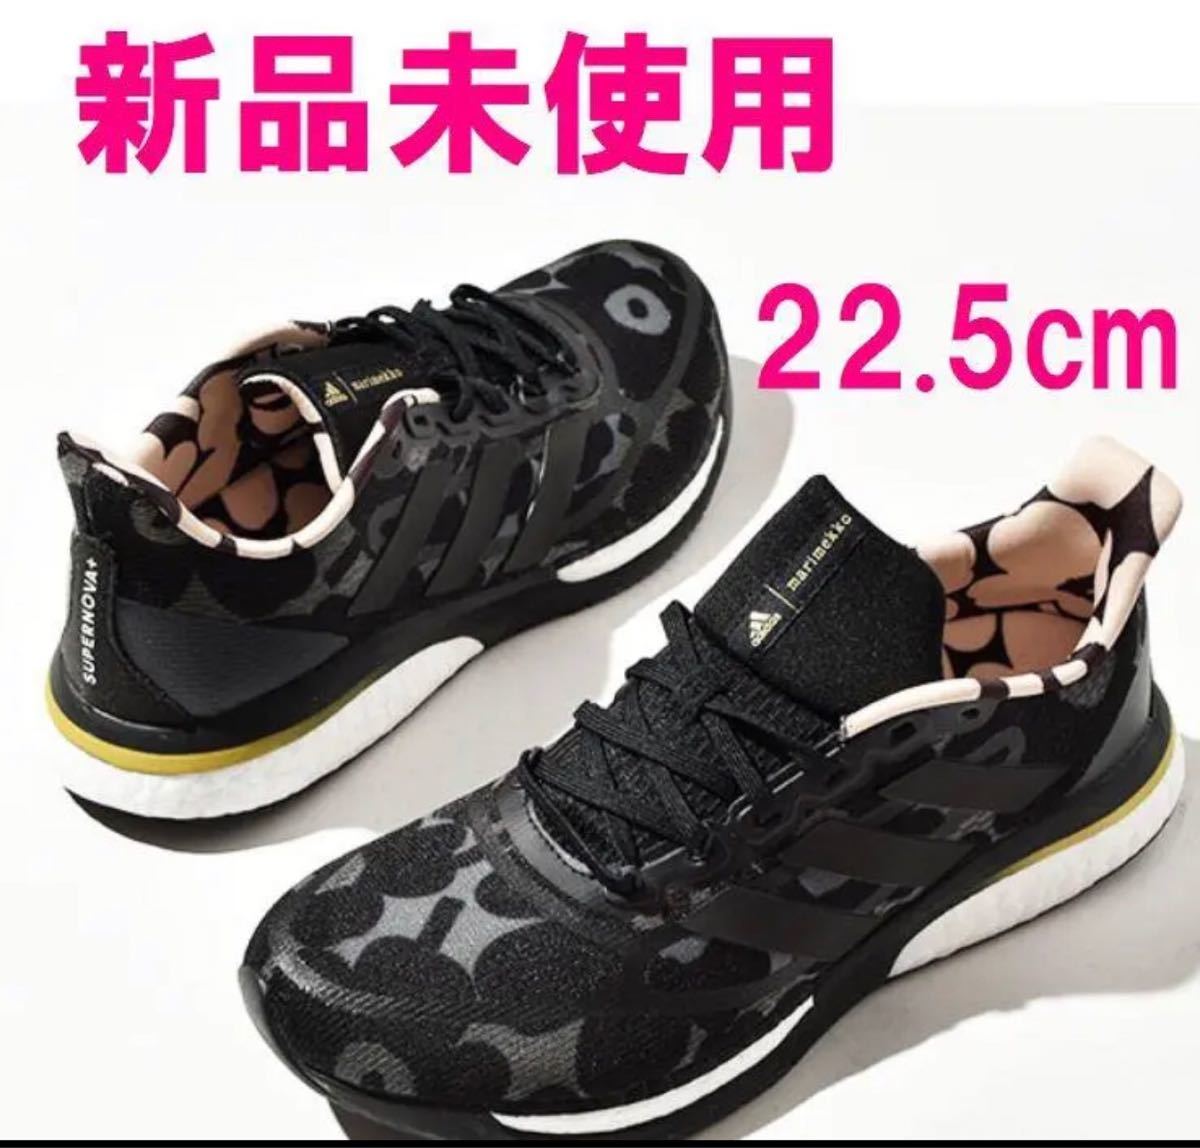 新品 adidas × marimekko アディダス マリメッコ コラボ スニーカー 22.5cm ウニッコ SUPERNOVA